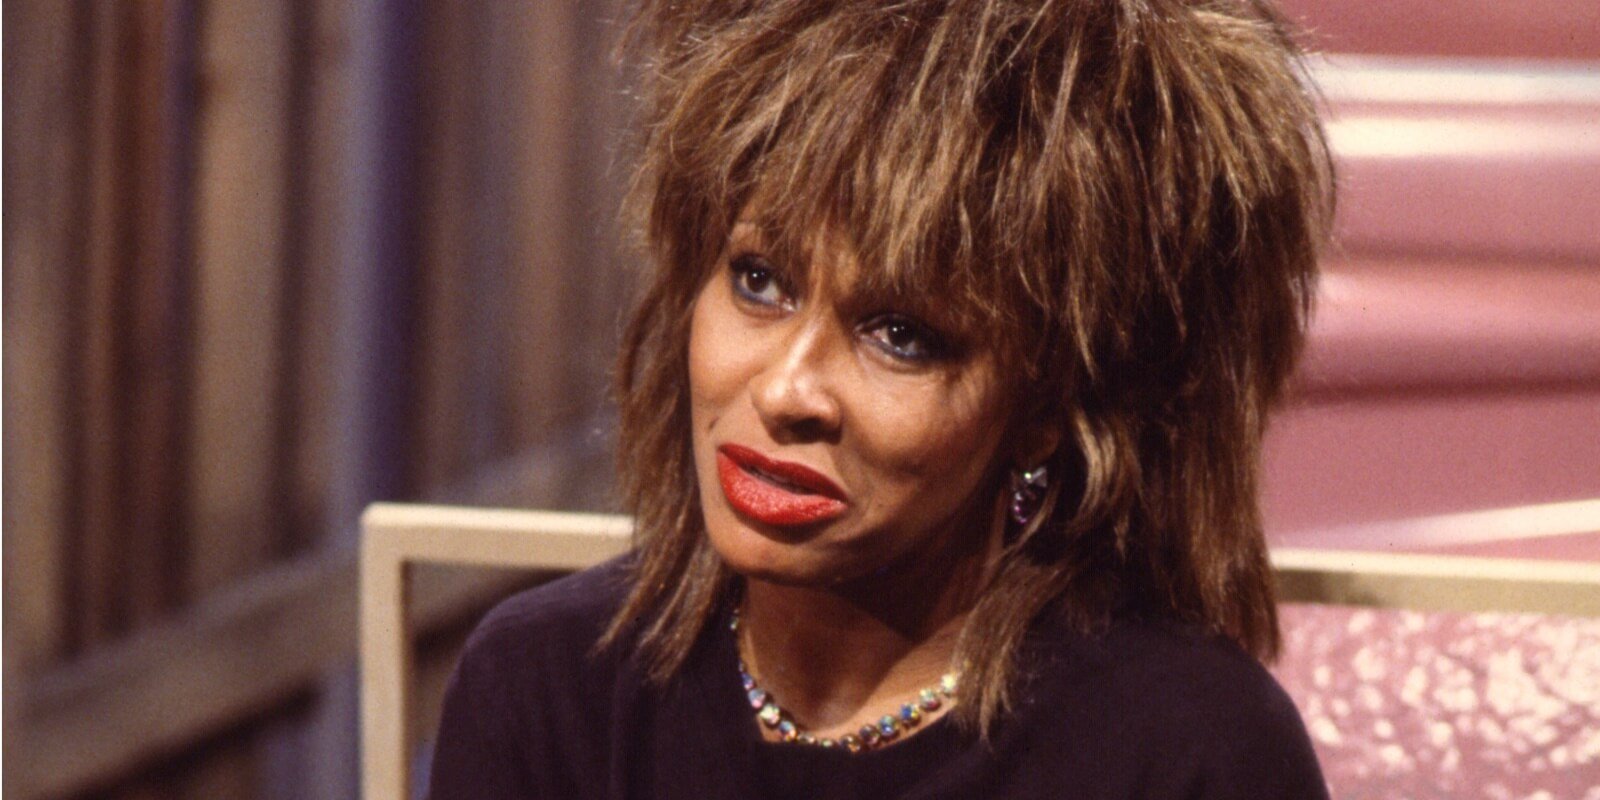 Tina Turner escreveu 'Eu me coloquei em grave perigo' em um post de mídia social dois meses antes de sua morte